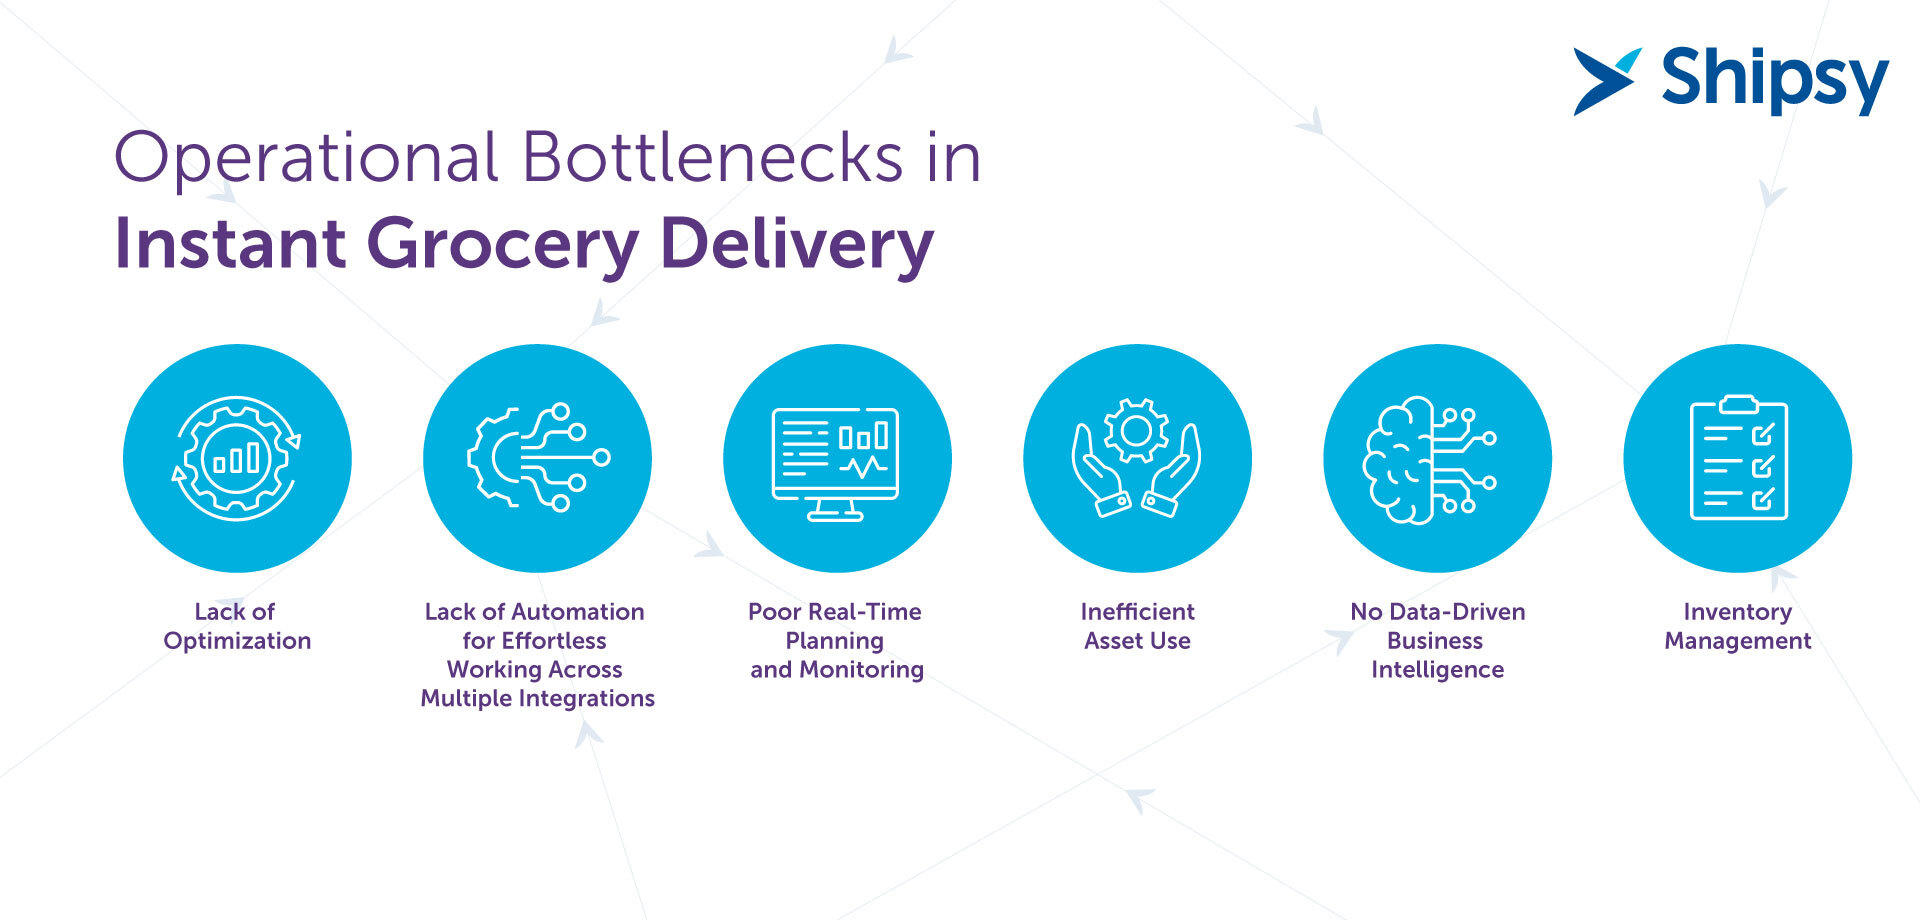 Instant grocery delivery bottlenecks